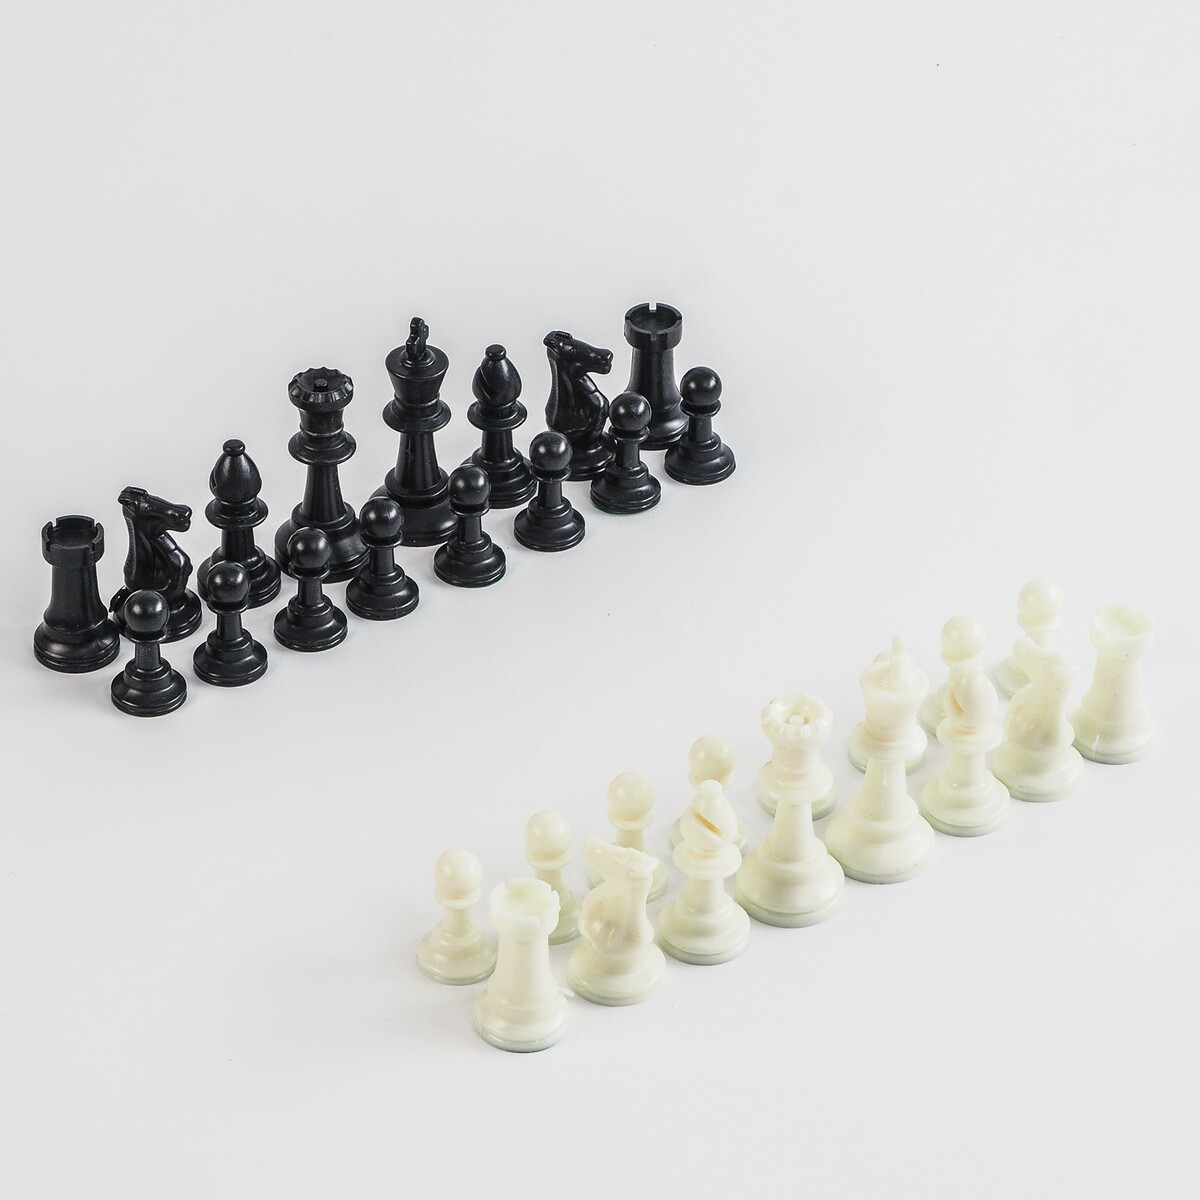 Шахматные фигуры, пластик, король h-7.5 см, пешка h-3.5 см король сусликов